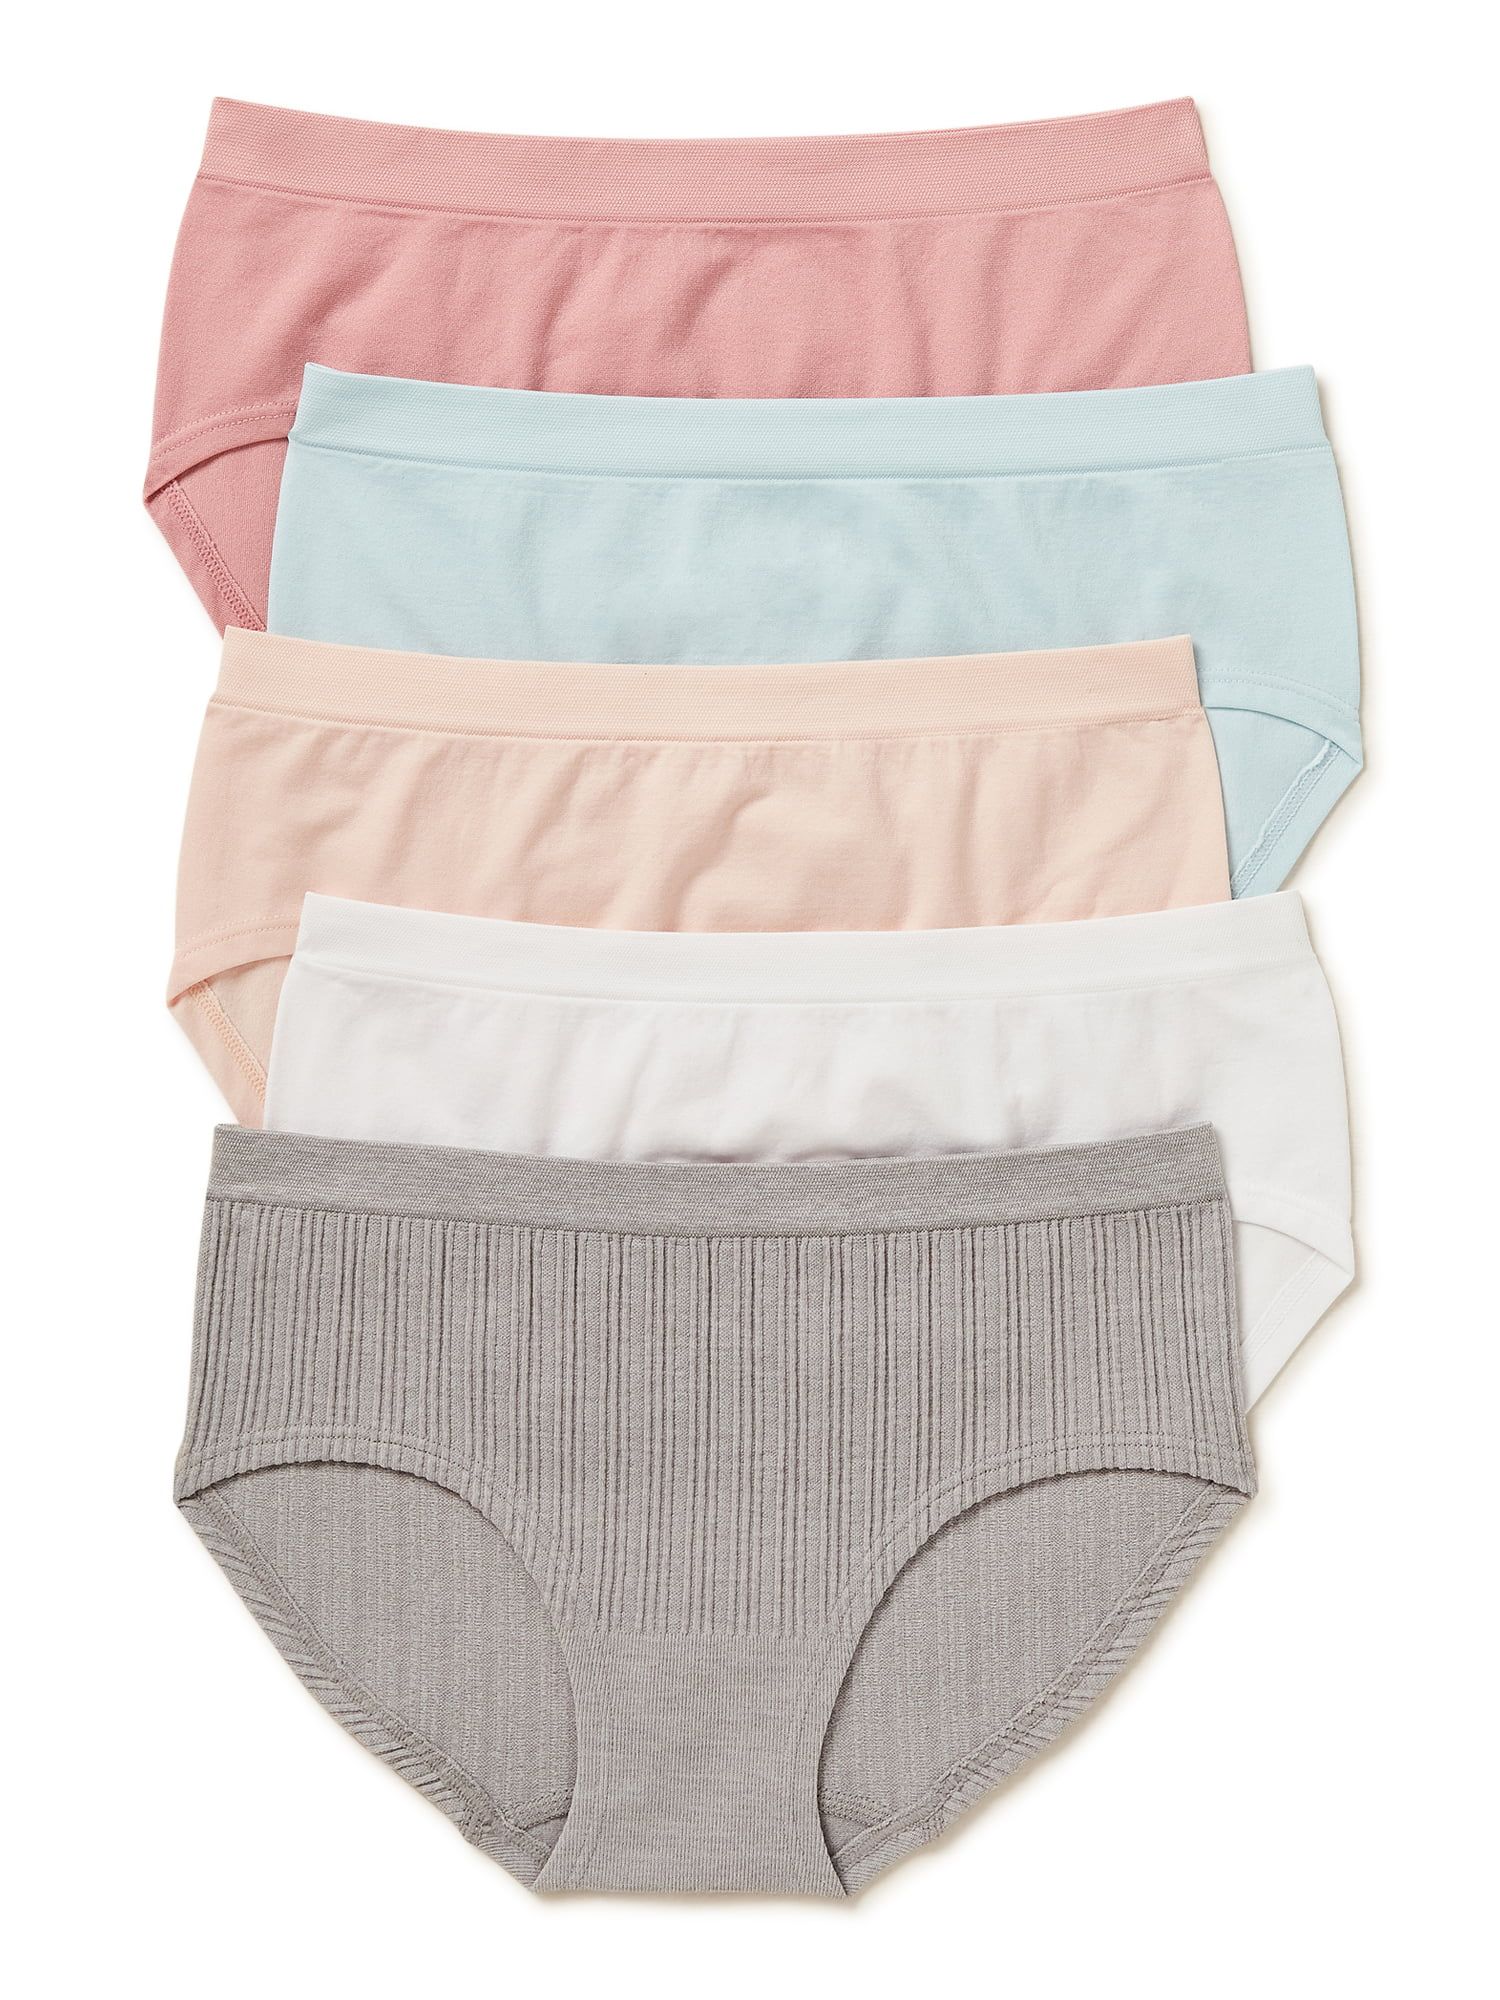 Wonder Nation Girls Brief Underwear, 5-Pack, Sizes S-XL | Walmart (US)